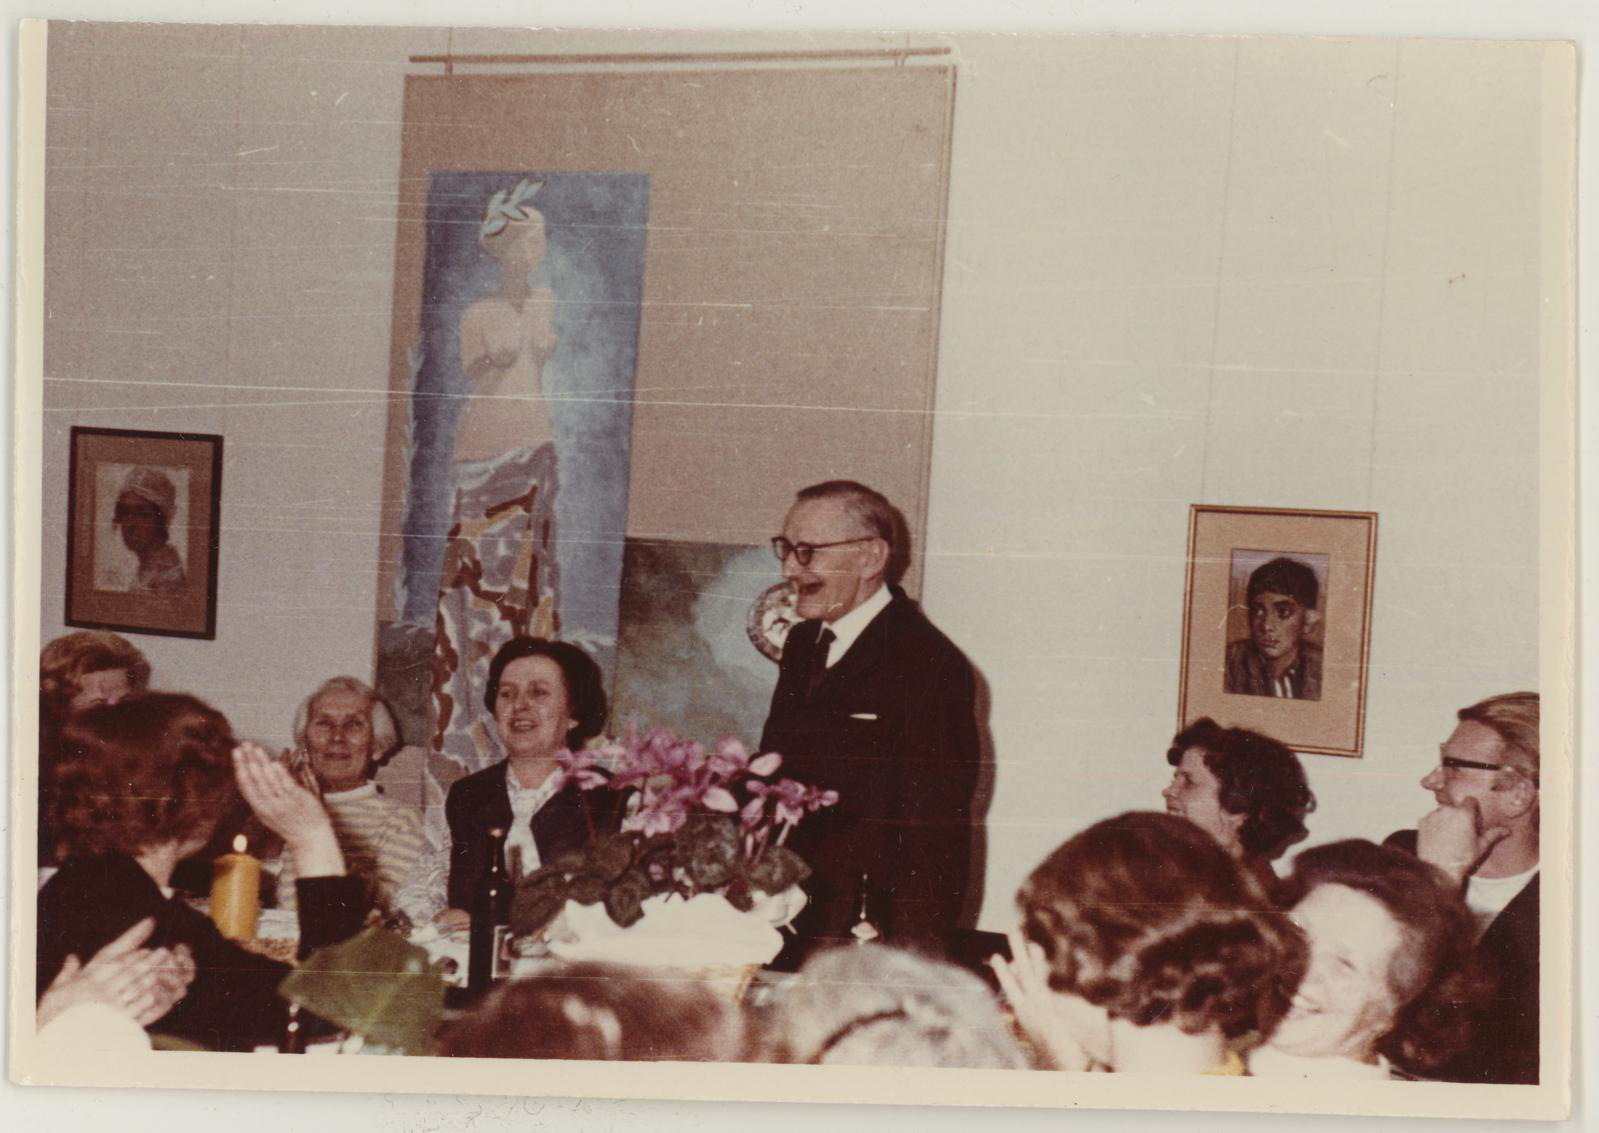 Direktor Vaike Tiigi 50-aasta juubeli tähistamine 6.detsembril (tegelikult 22.november) 1971. Peolauas.